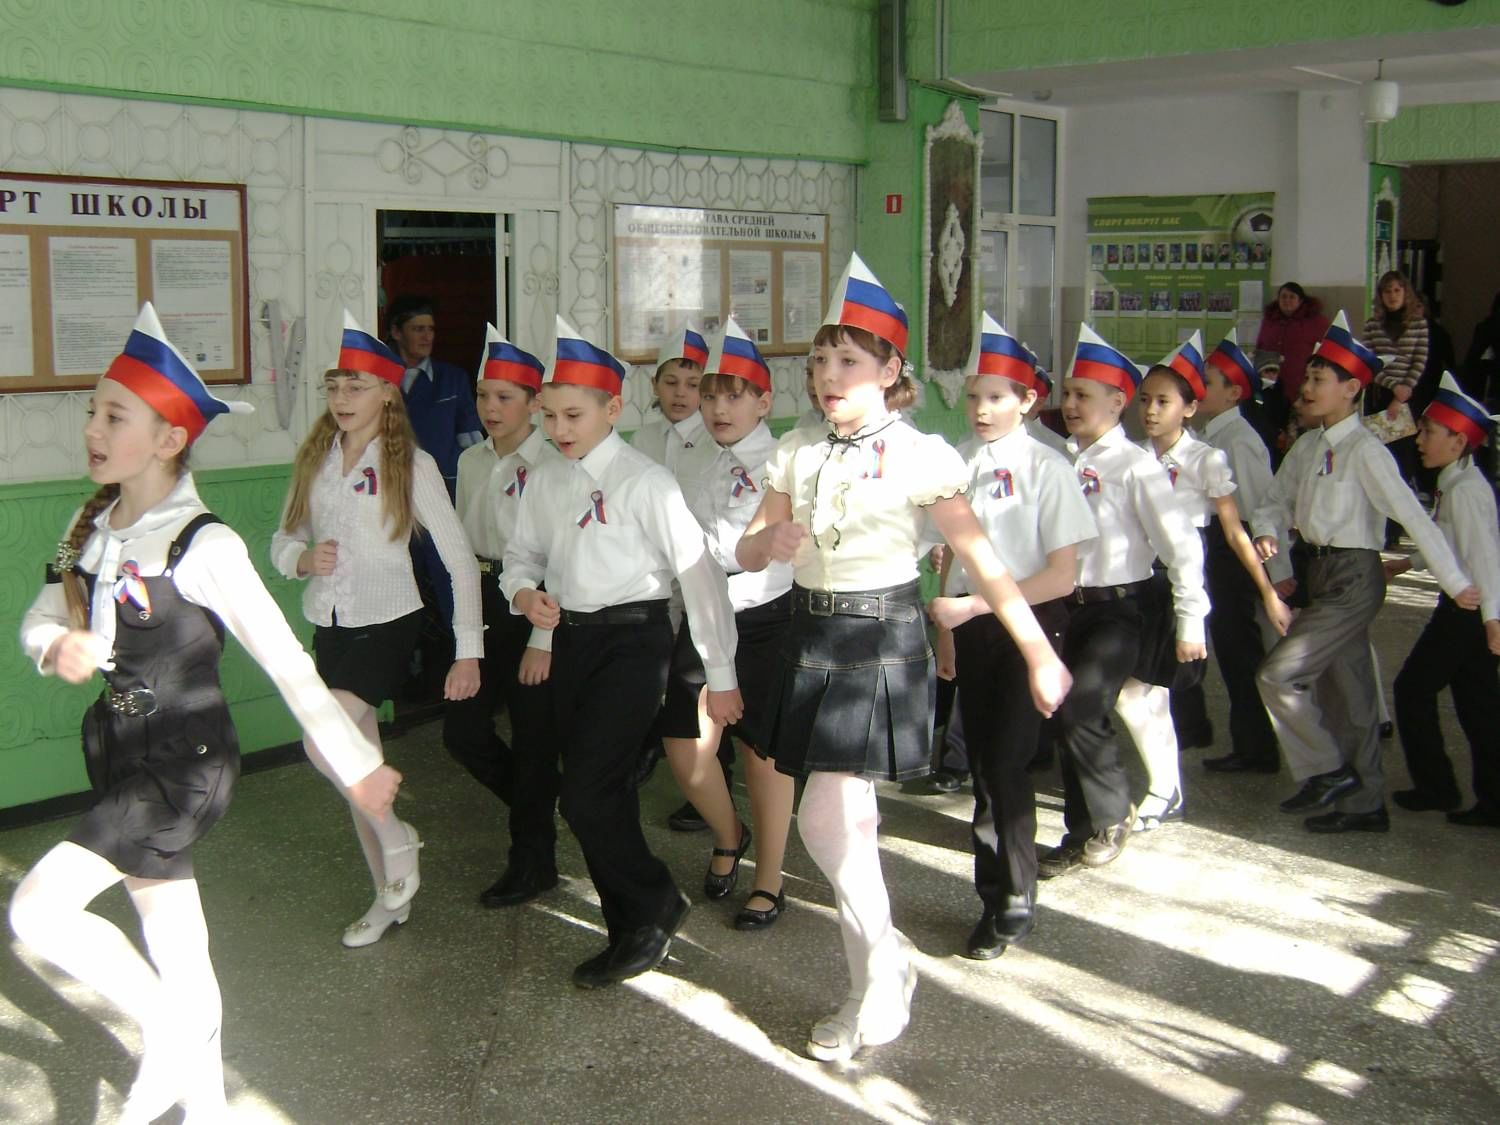 Фото на 23 февраля в школу. 23 Февраля в школе. Дети маршируют в школе. Школьник военный. Дети маршируют в форме.